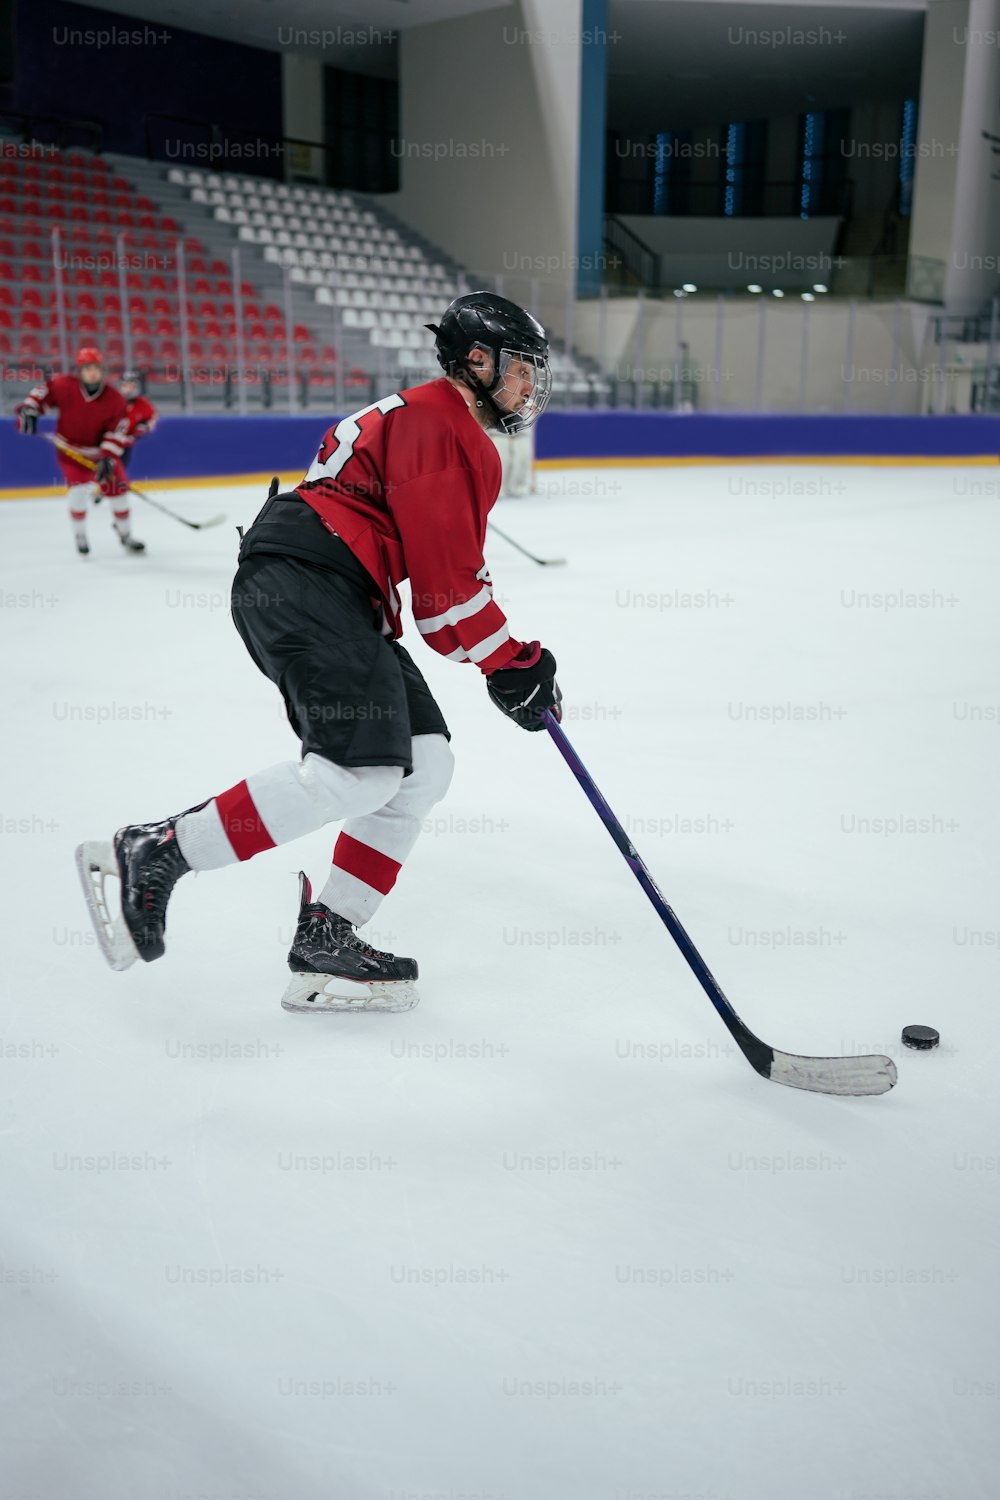 Un homme portant un chandail rouge jouant au hockey